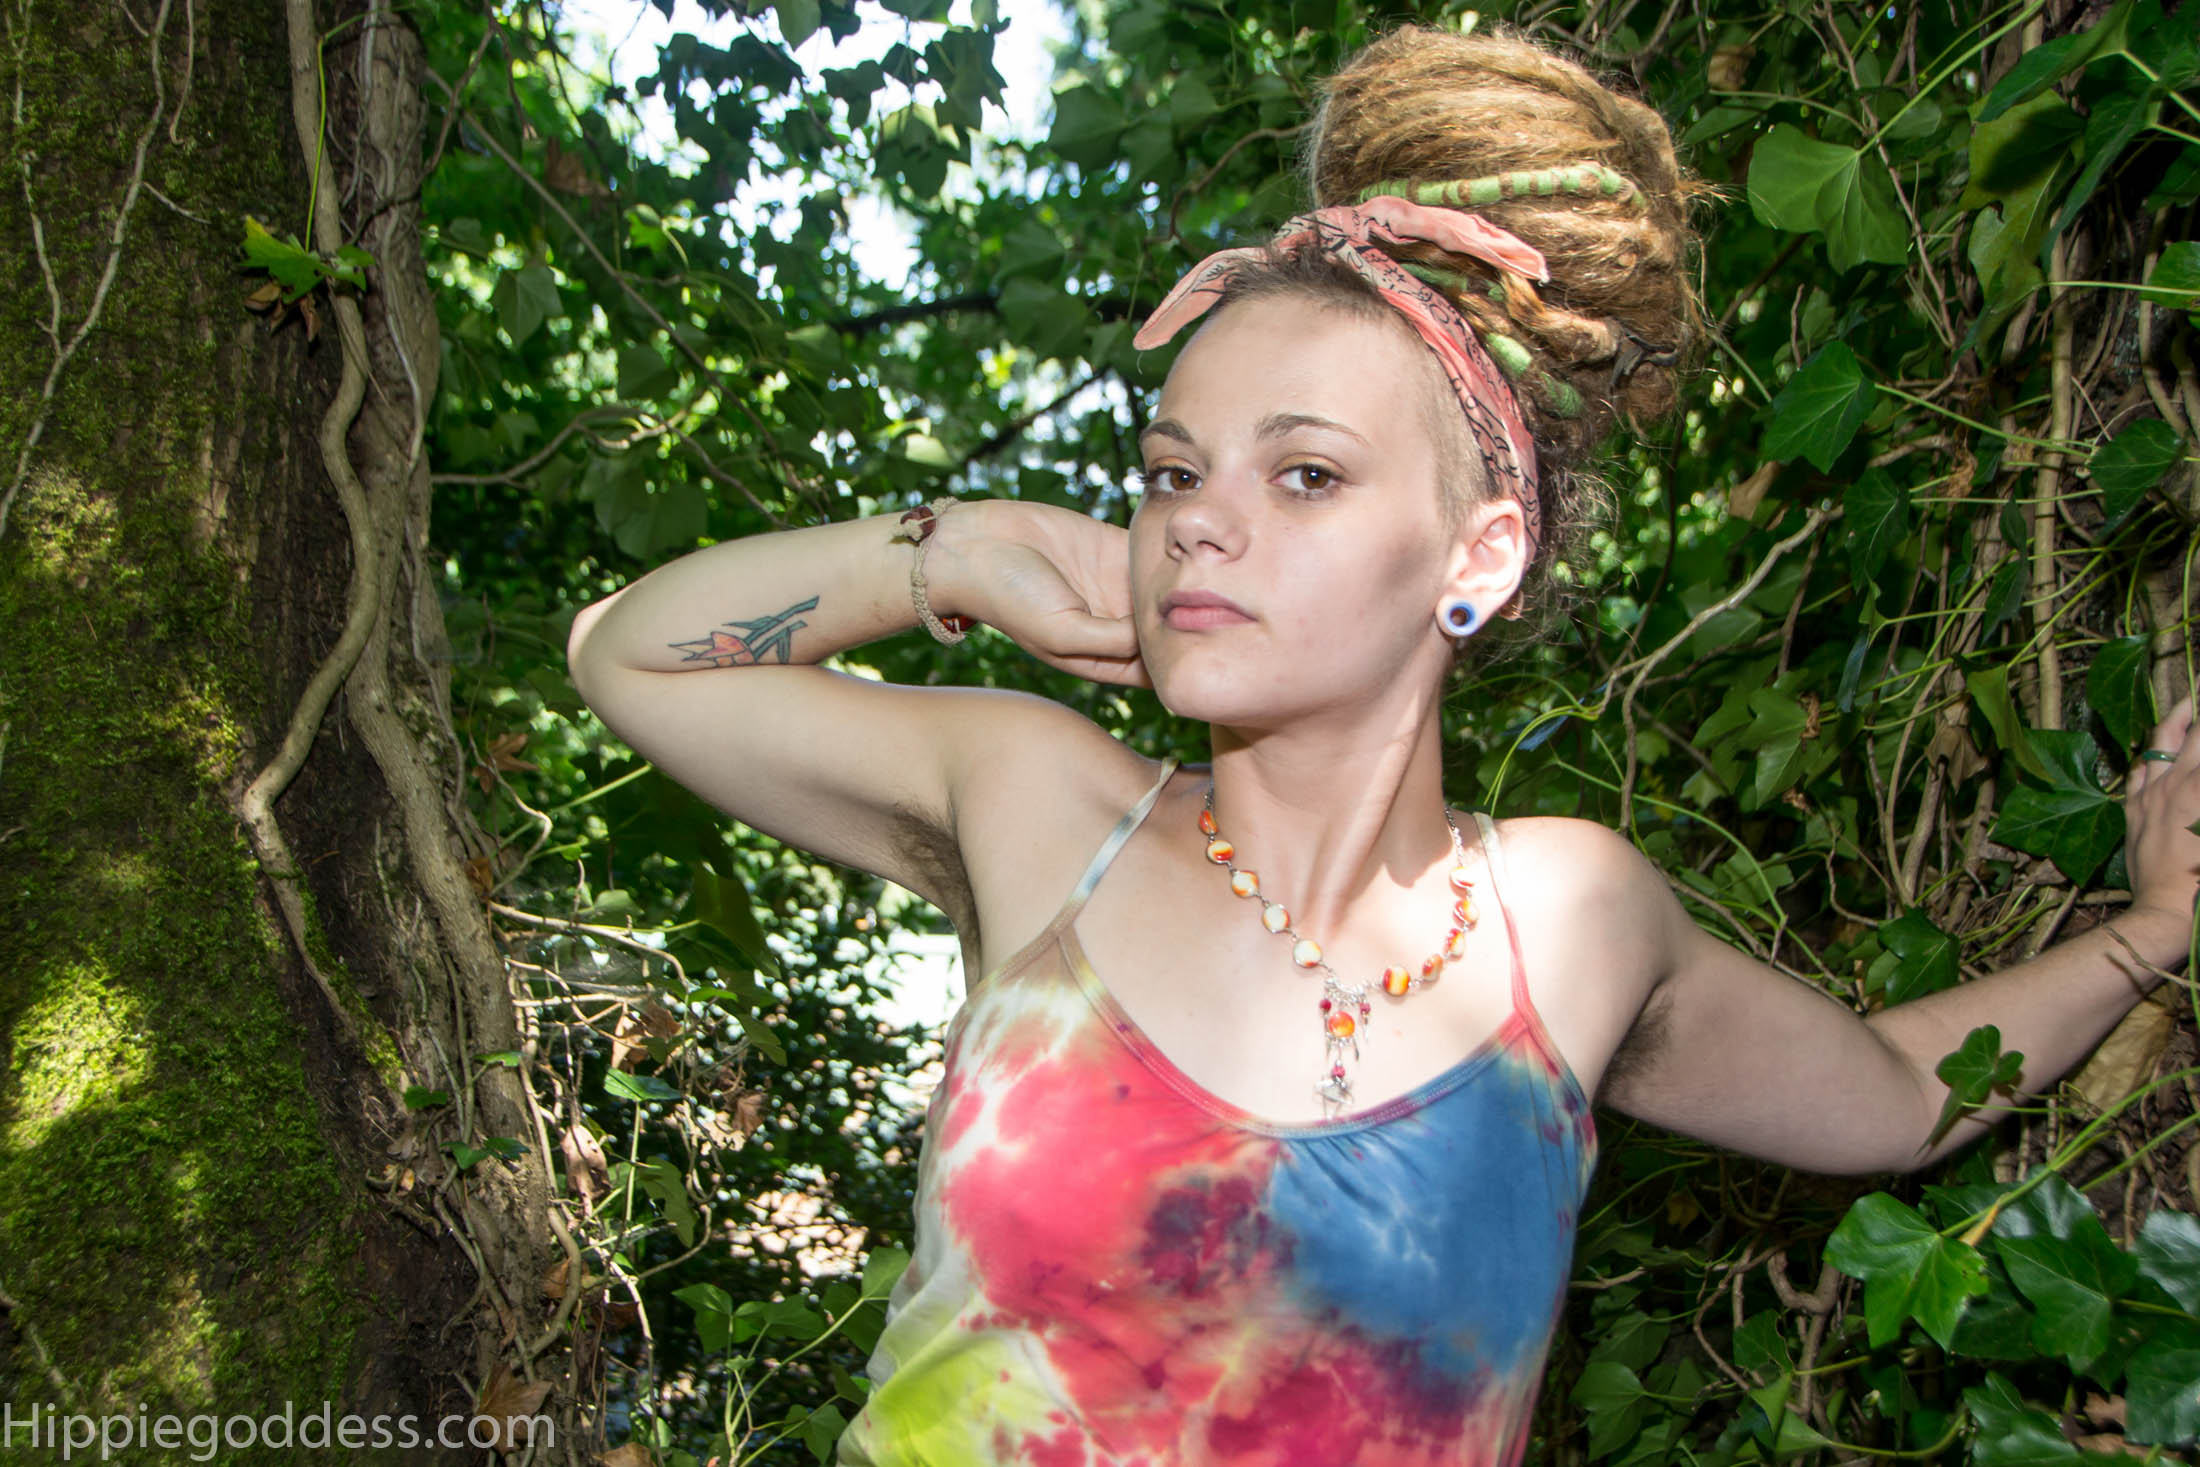 Dreadlocks Hippie Women Model Women Outdoors 2200x1467